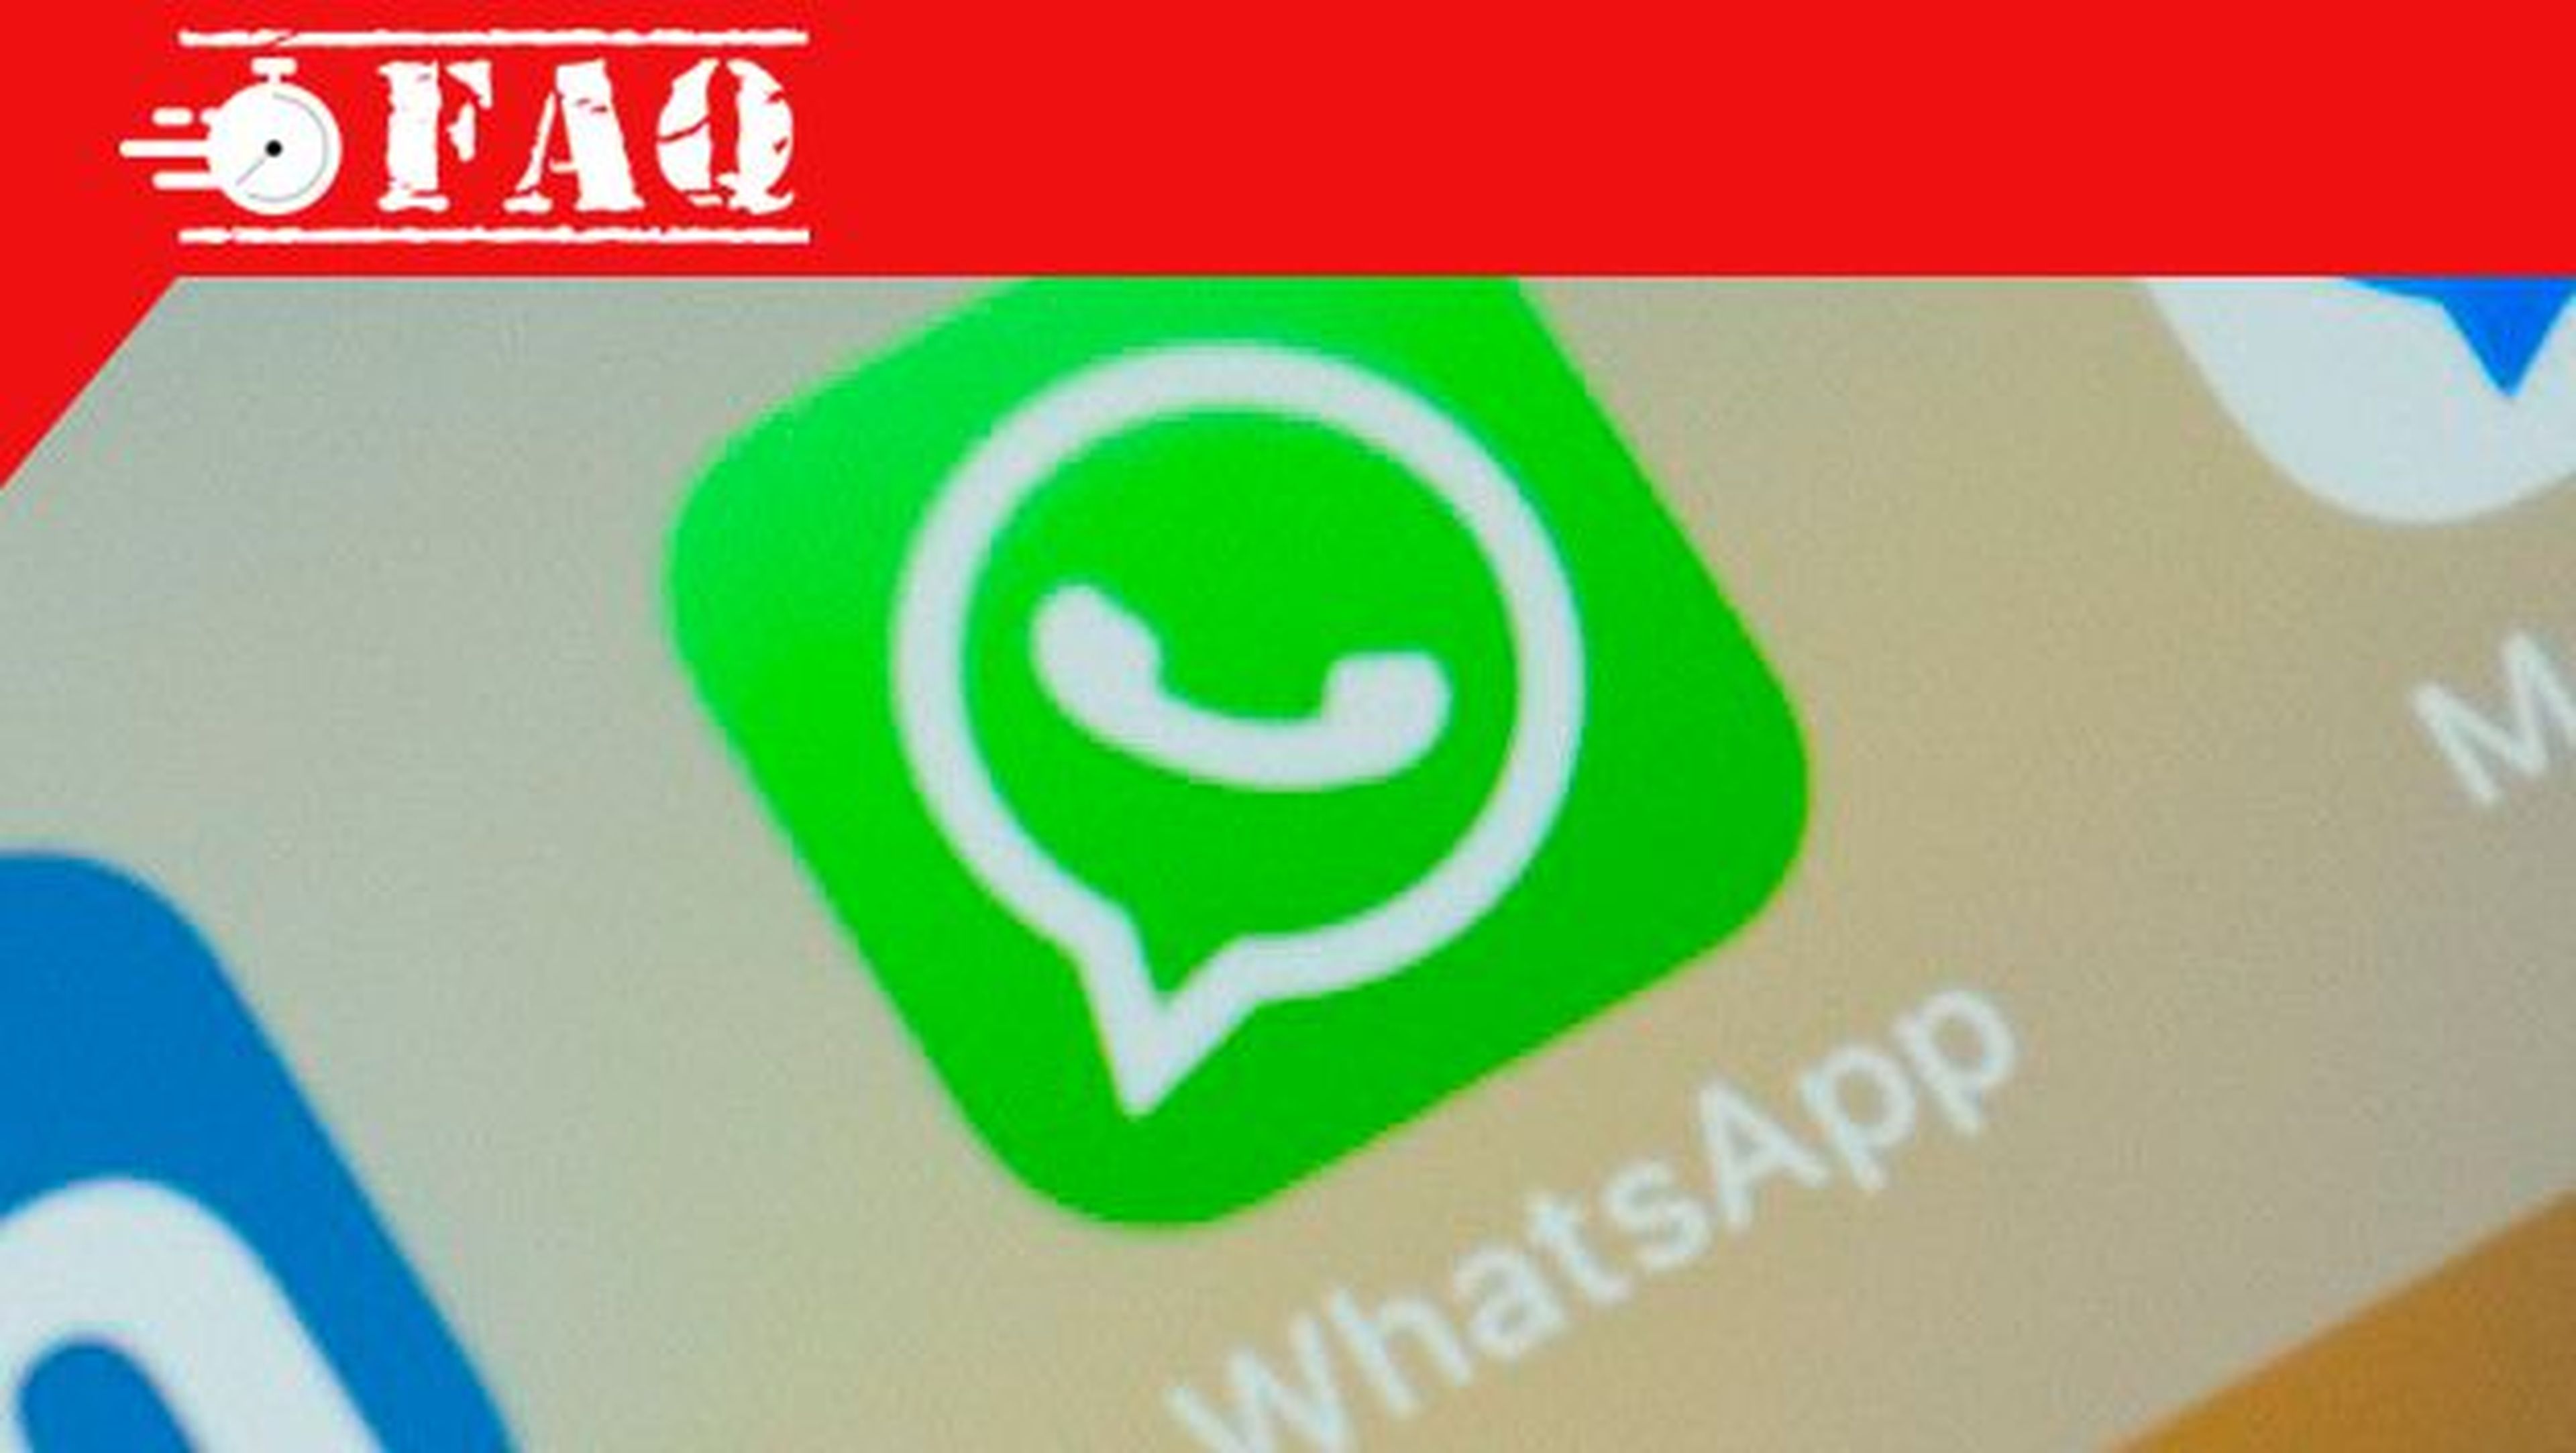 Ver archivos recibidos en una conversación de WhatsApp.